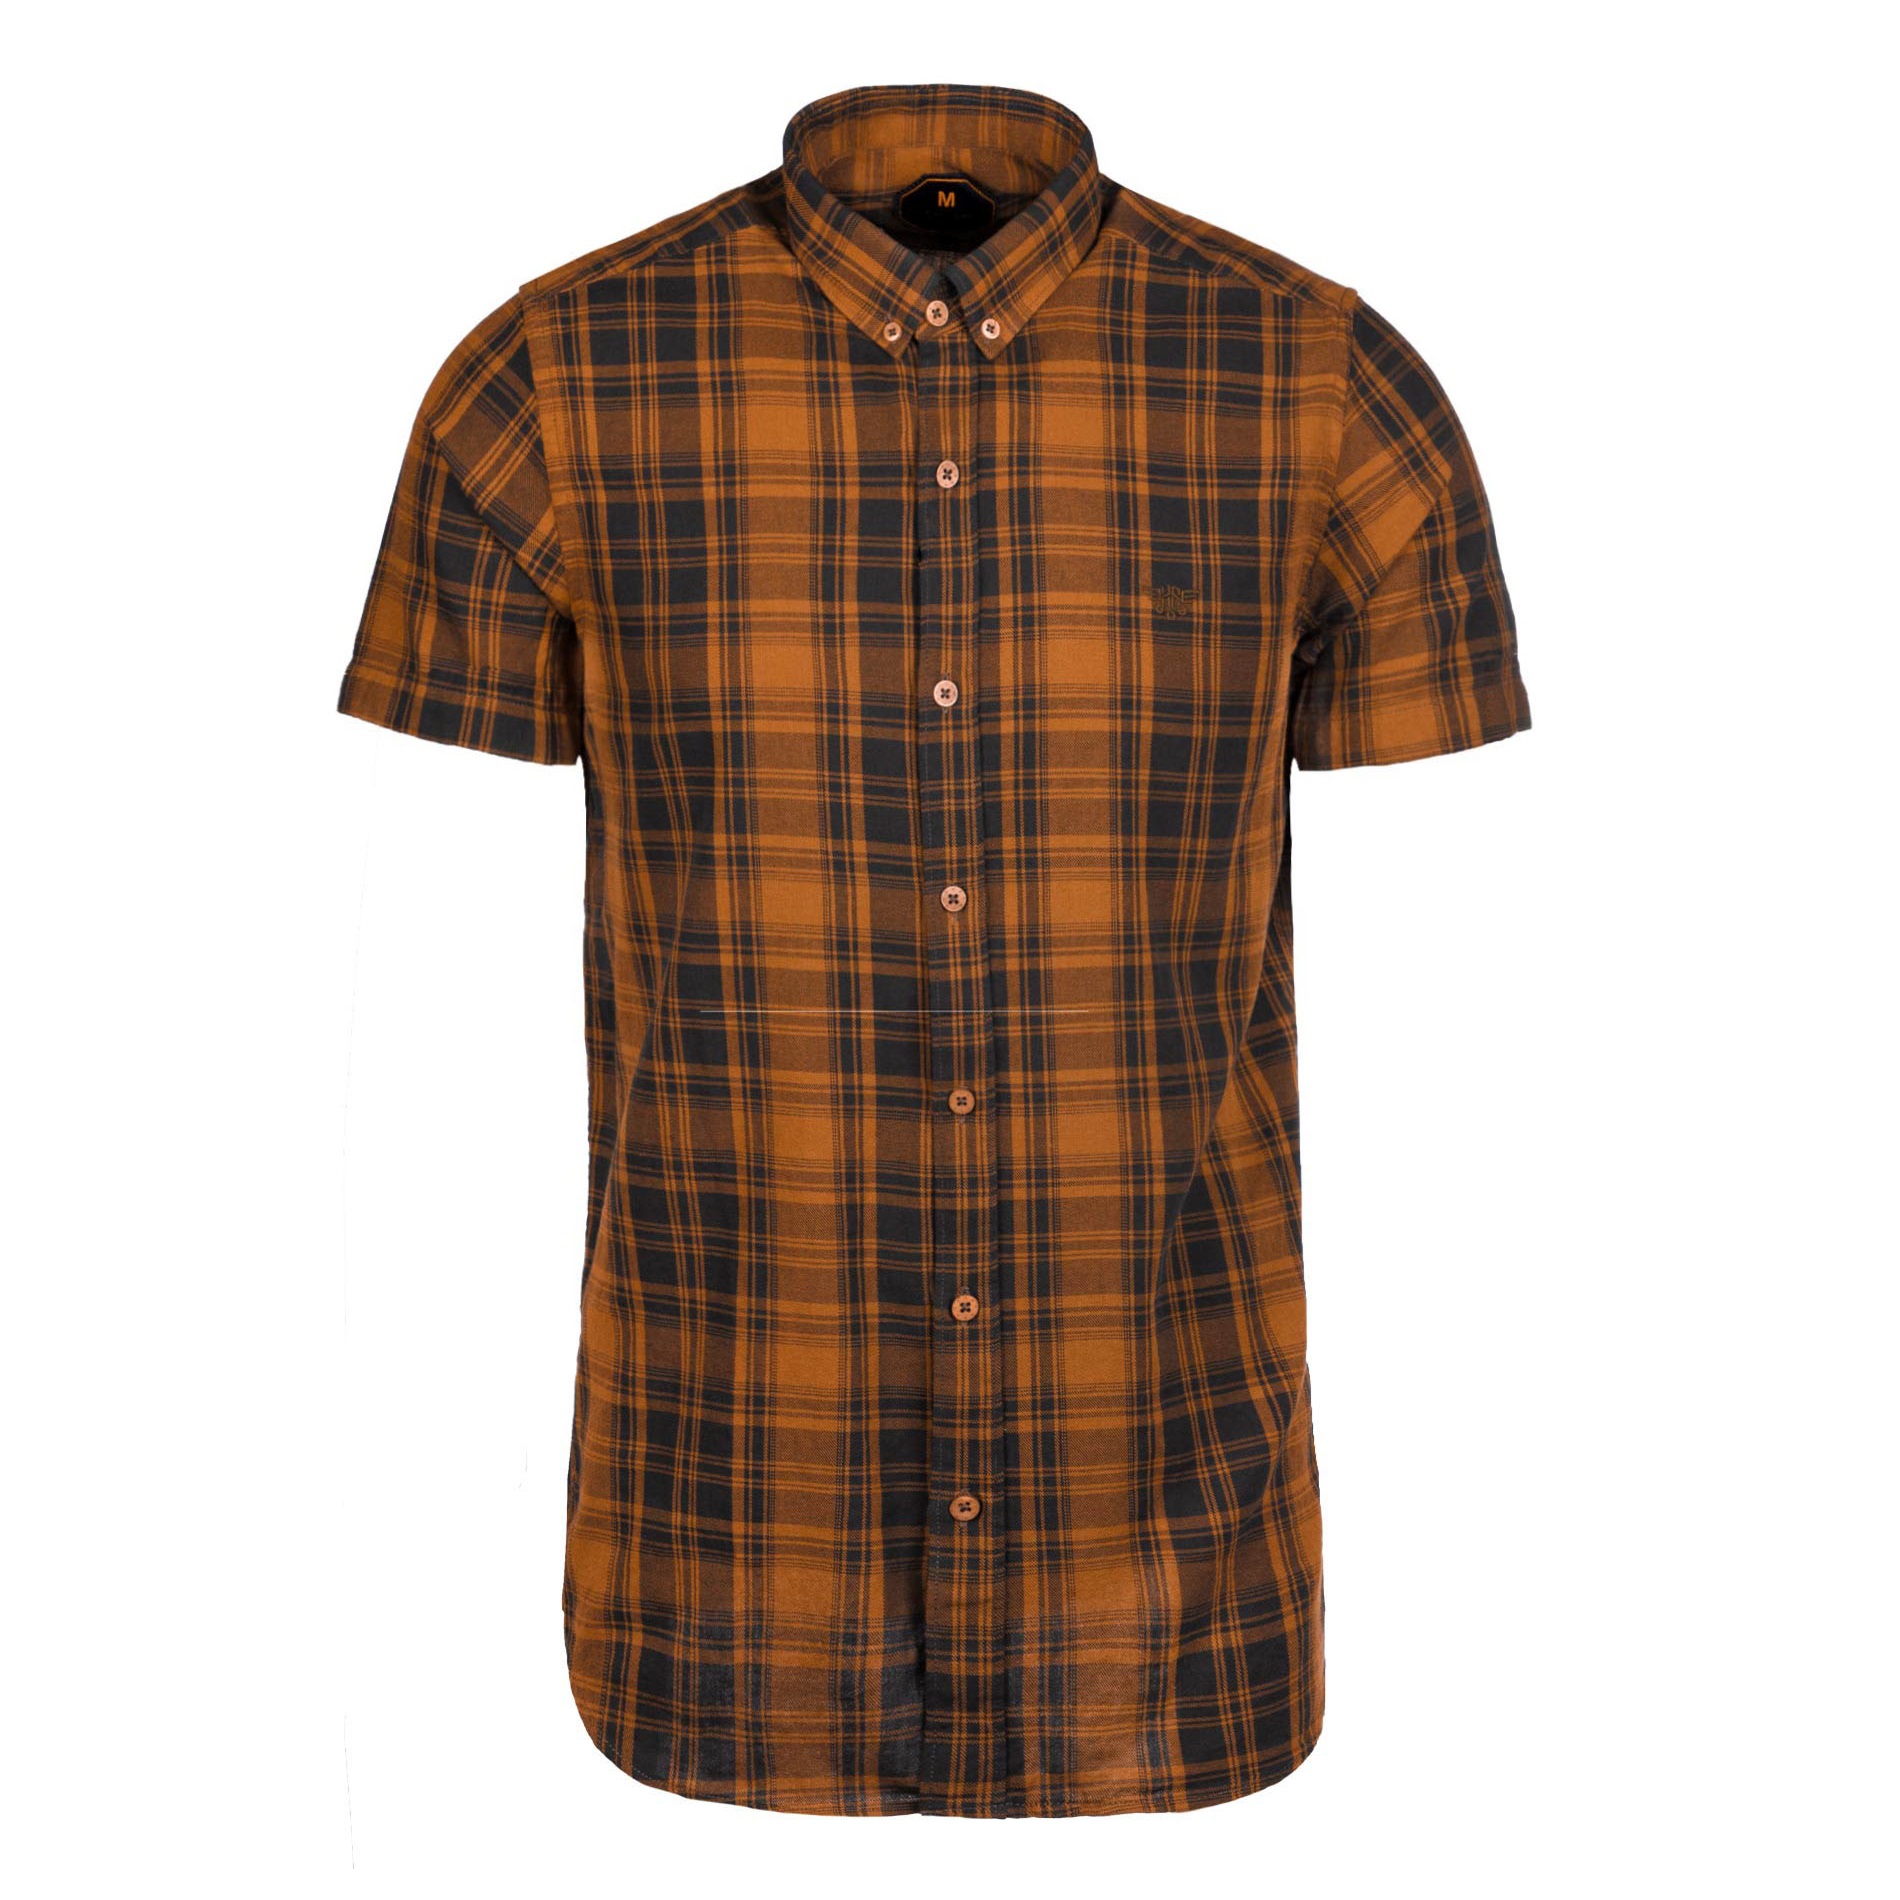 نکته خرید - قیمت روز پیراهن آستین کوتاه مردانه مدل SABS 4045 خرید